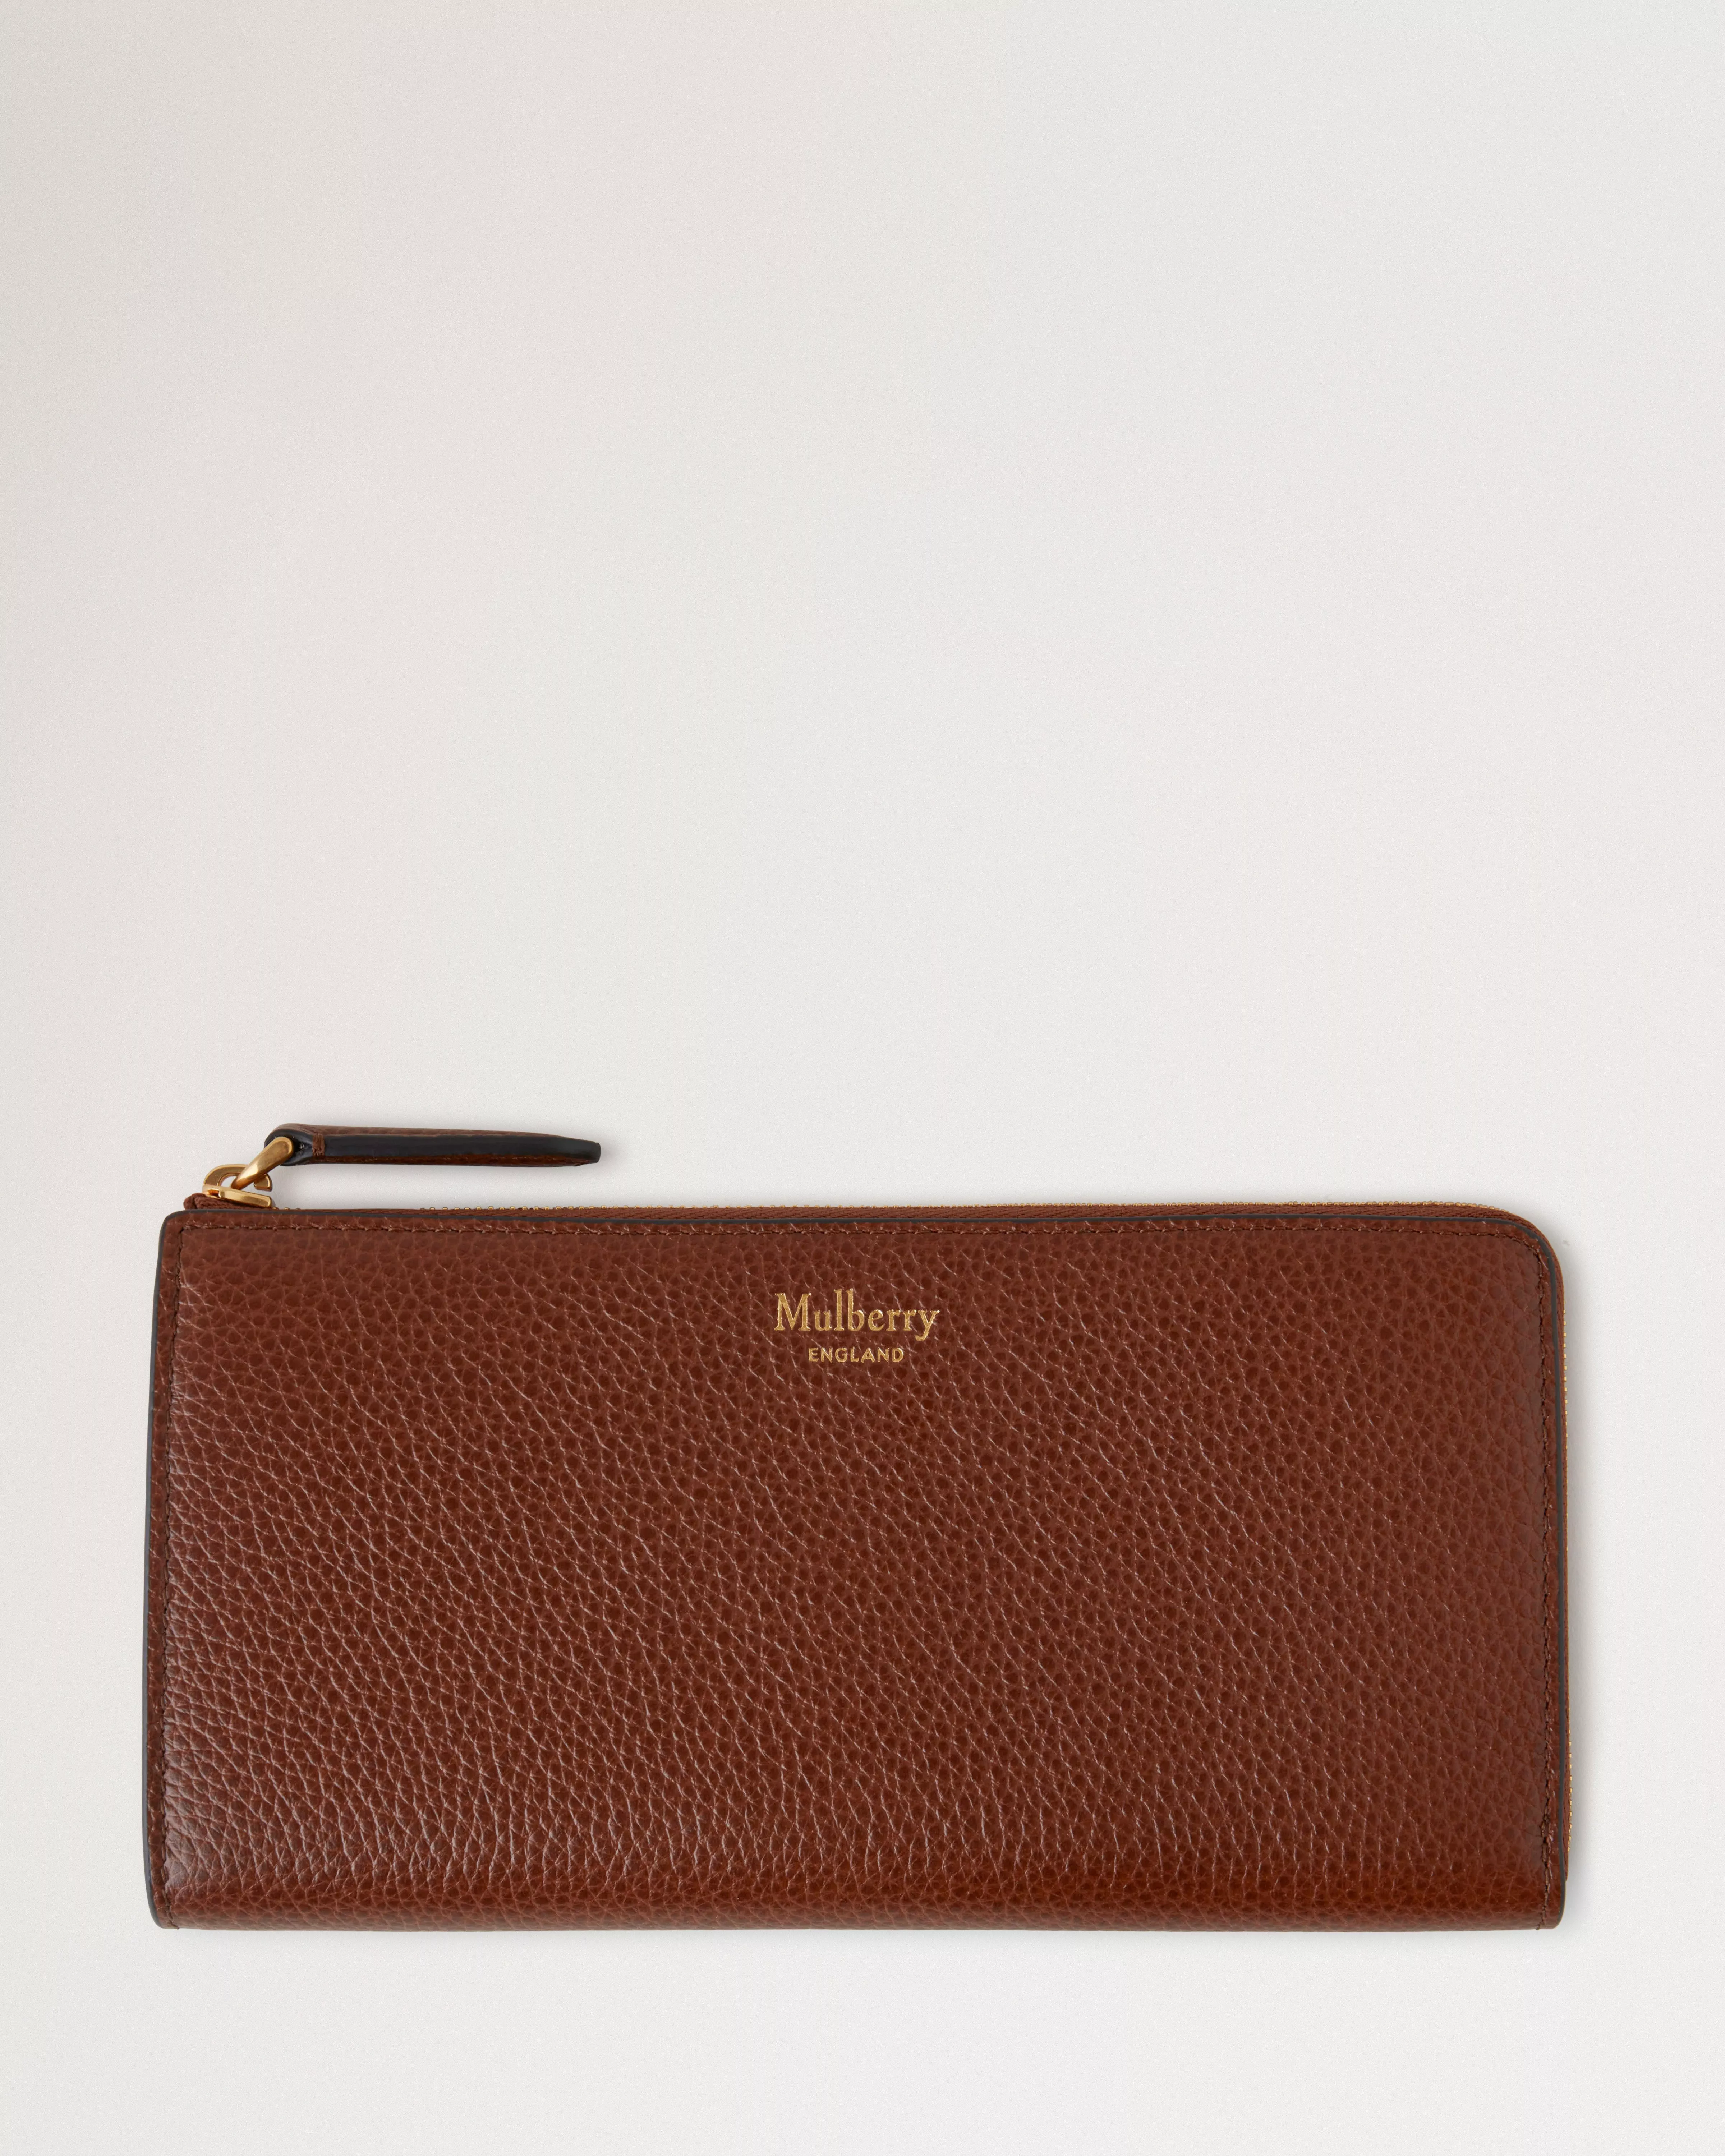 40代女性に人気のレディース長財布は、マルベリーのコンチネンタル ロング ジップアラウンド ウォレット